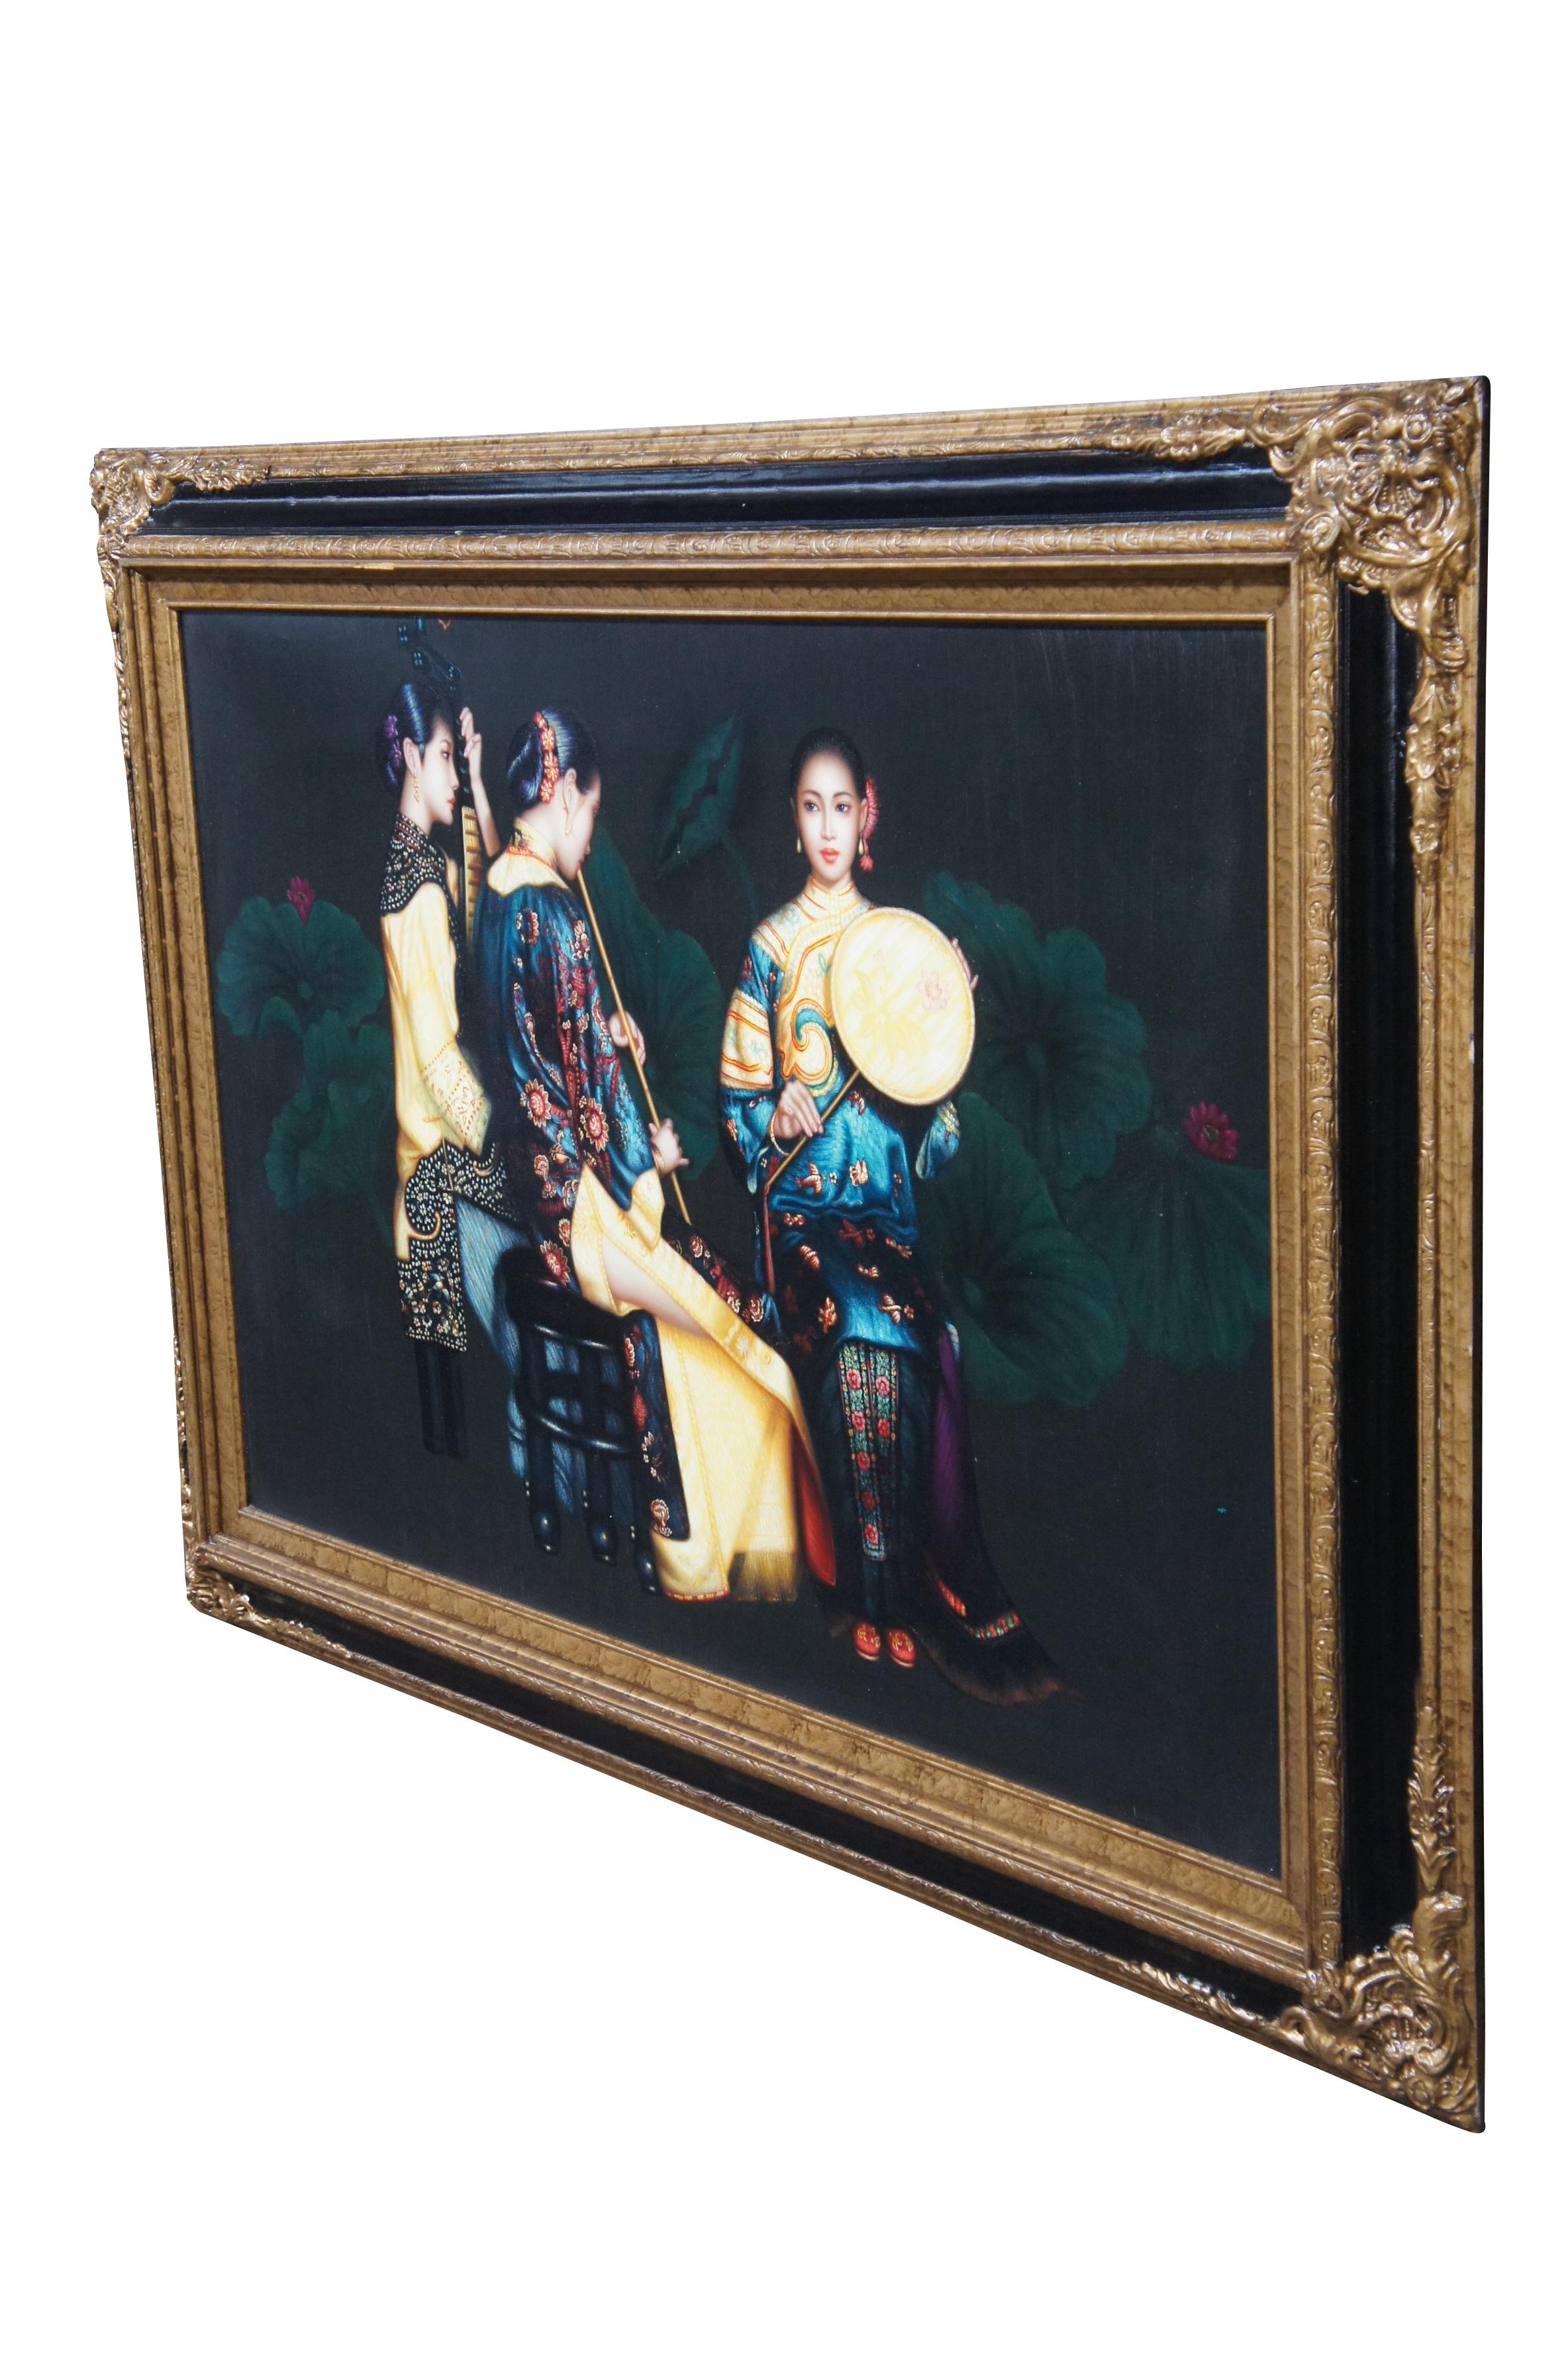 Vintage Trio der chinesischen Frau spielen Instrumente Ölgemälde auf Leinwand nach Chen Yifei.  Drei junge Musiker in traditioneller Hofkleidung spielen verschiedene Instrumente.

Chen Yifei (chinesisch: 陈逸飞; 12. April 1946 - 10. April 2005) war ein